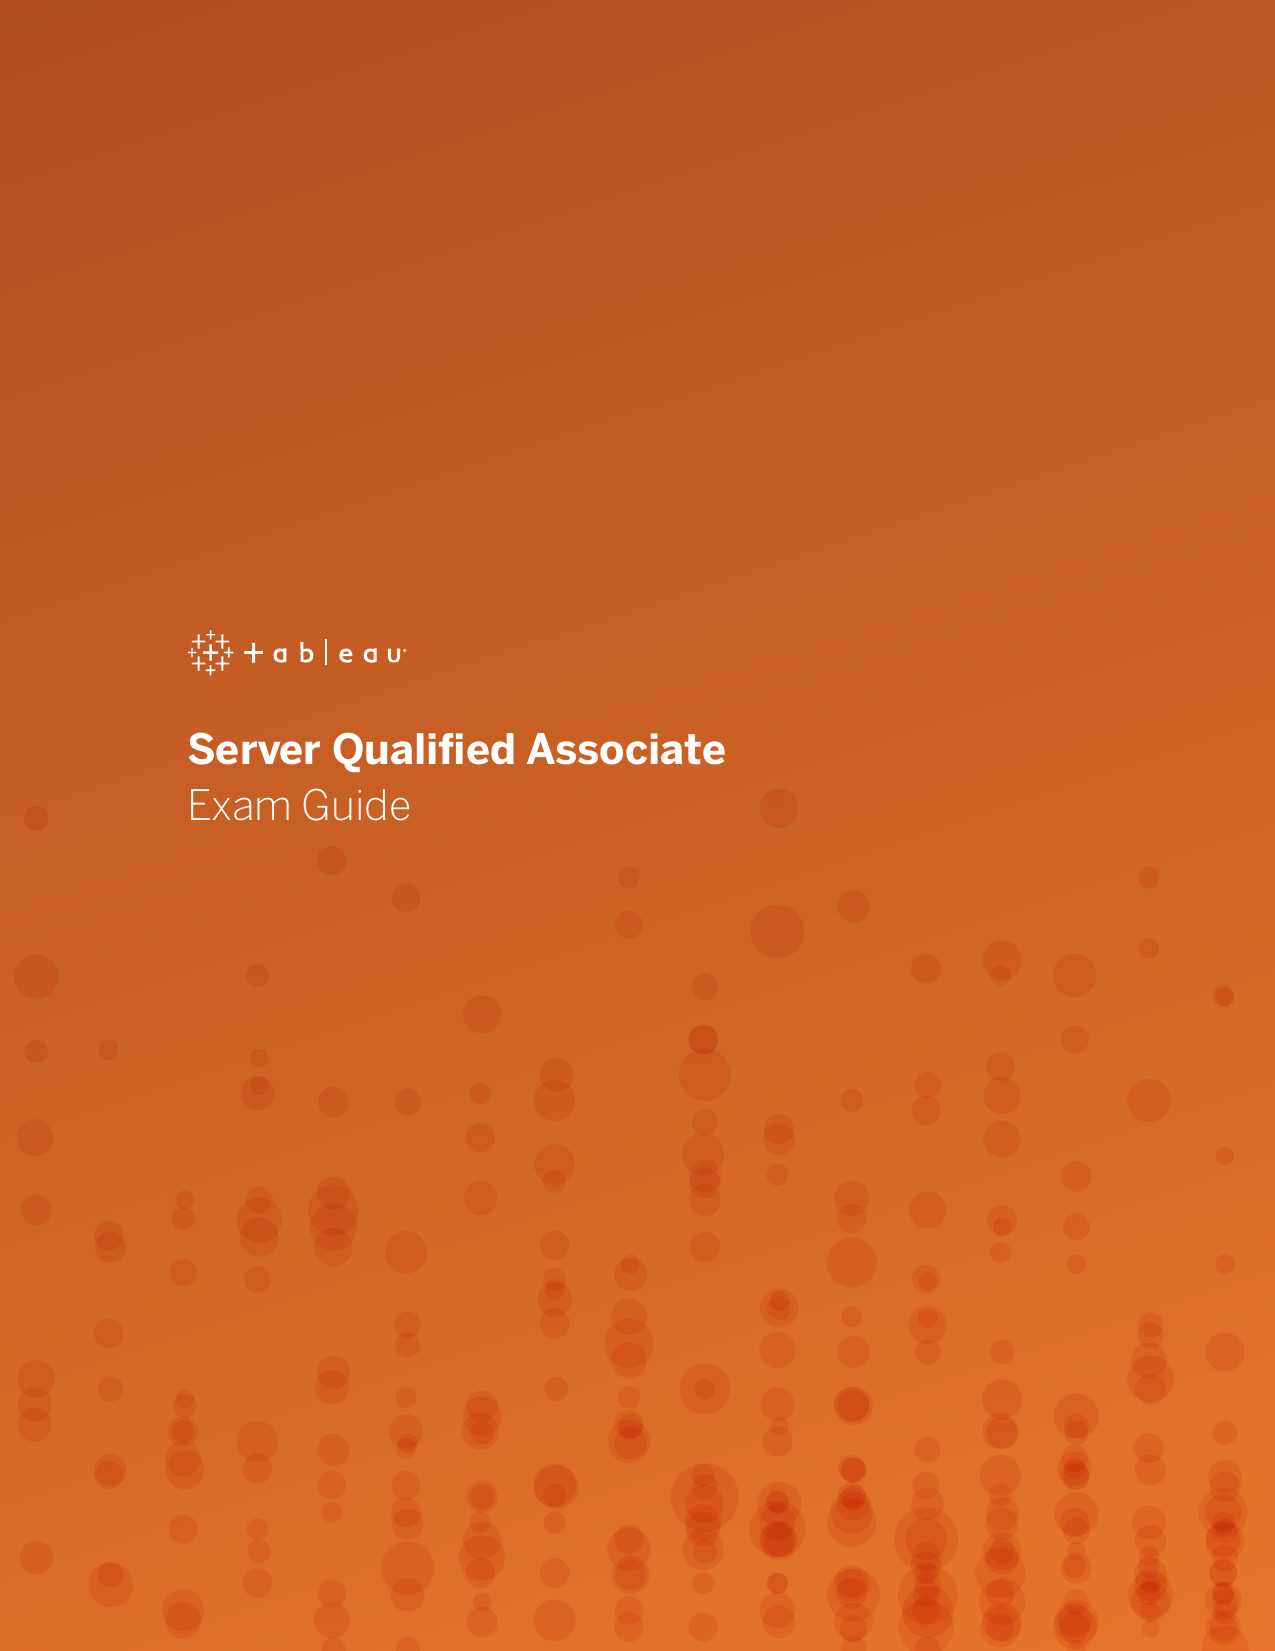 Page 1 of 7 - Server QA Exam Guide